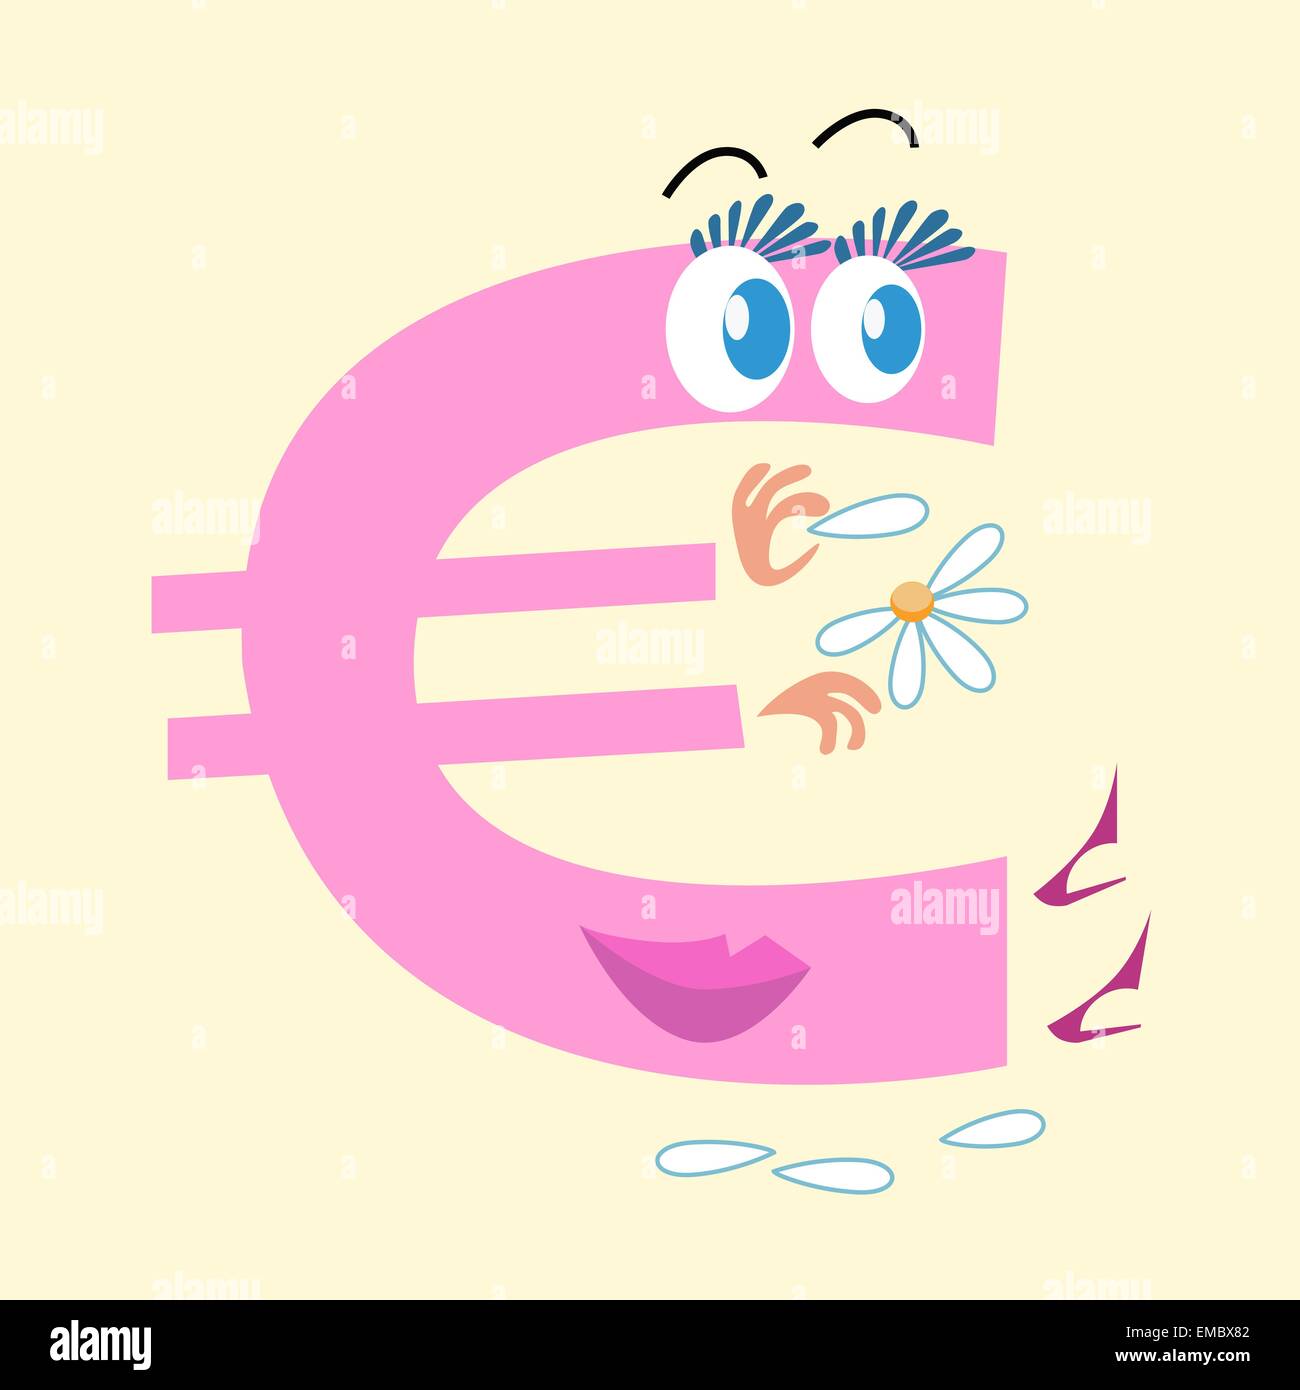 Die Euro-Zeichen ist die nationale Währung Europas. Der Charakter des Euro-Zeichens wundert auf Gänseblümchen Liebe ihn oder nicht. Geschäft Stock Vektor